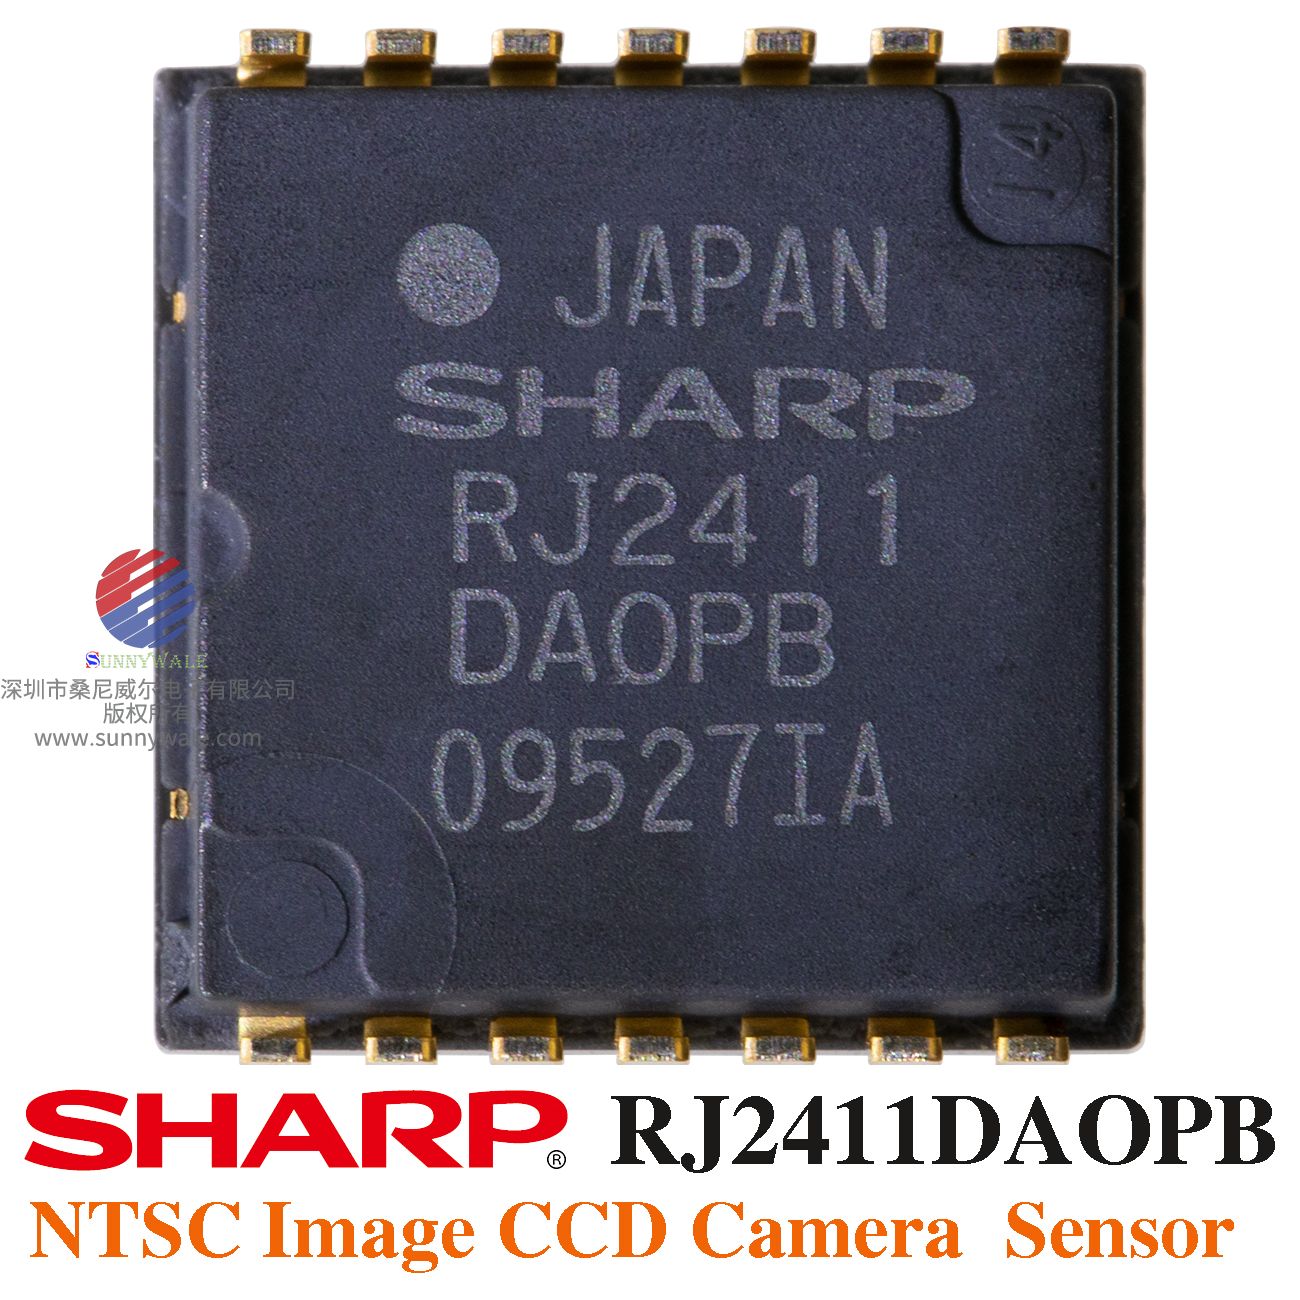 夏普SHARP RJ2411DA0PB